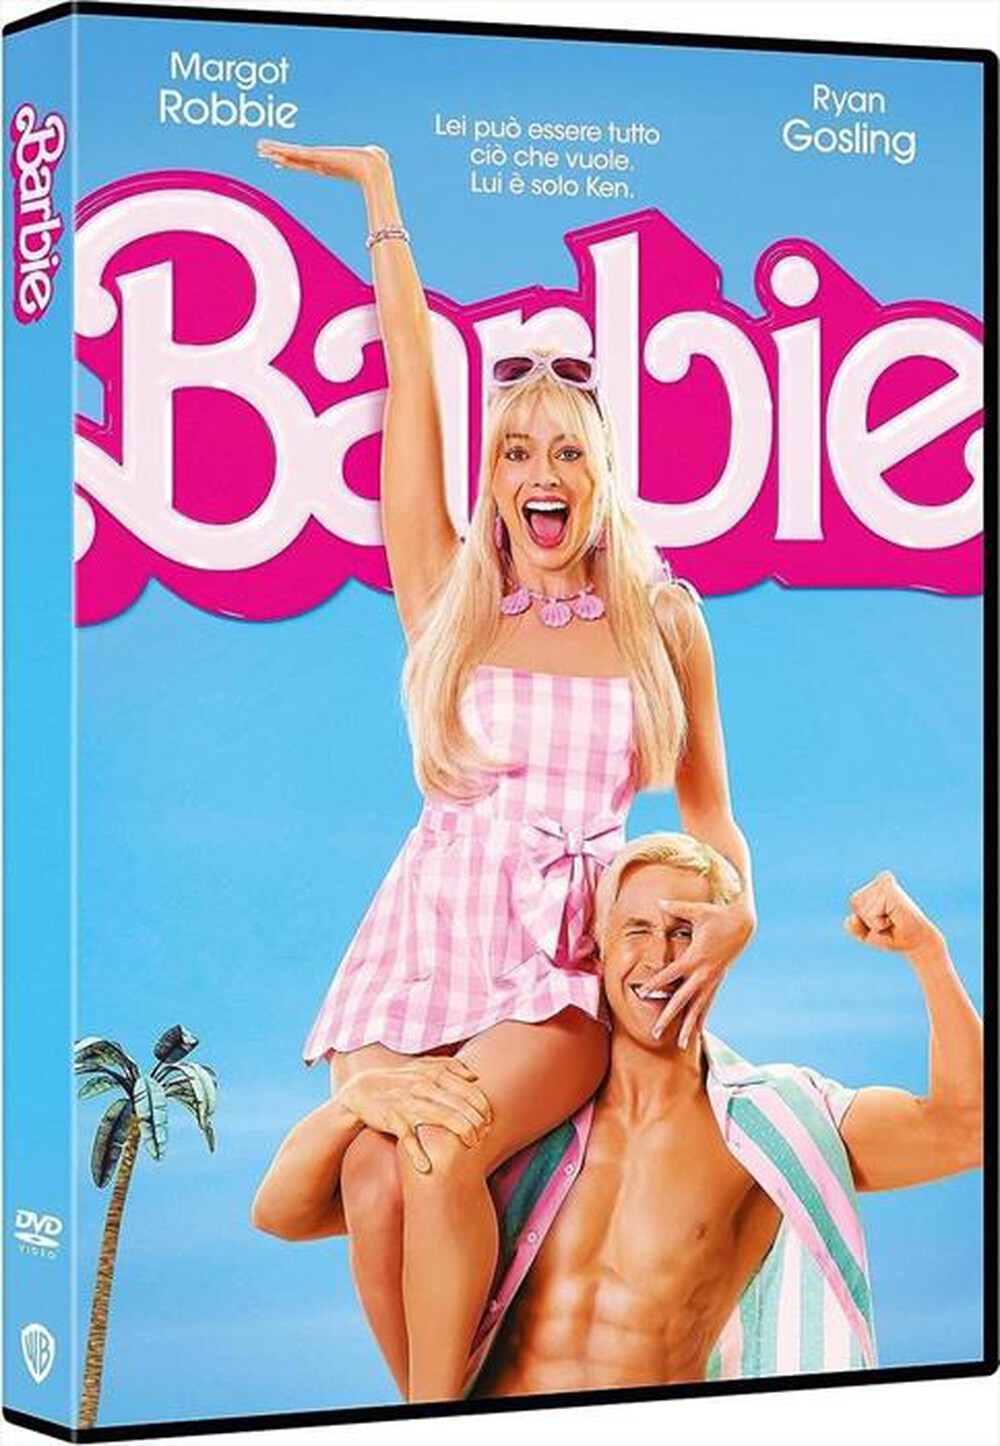 "WARNER HOME VIDEO - Barbie"